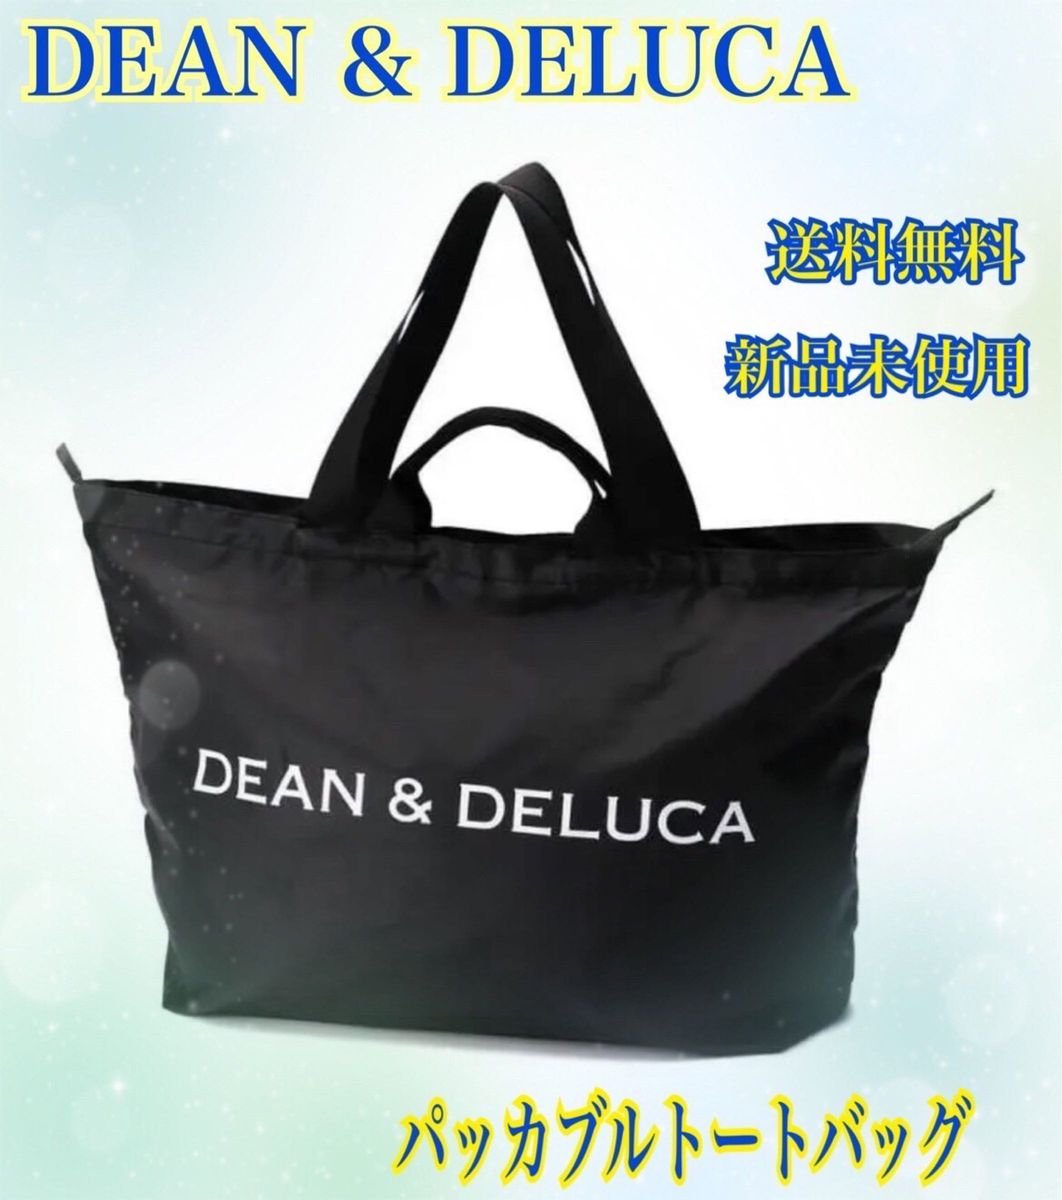 【本日限定SALE】DEAN & DELUCA パッカブルトートバッグ エコバッグ 黒 旅行 ショッピング